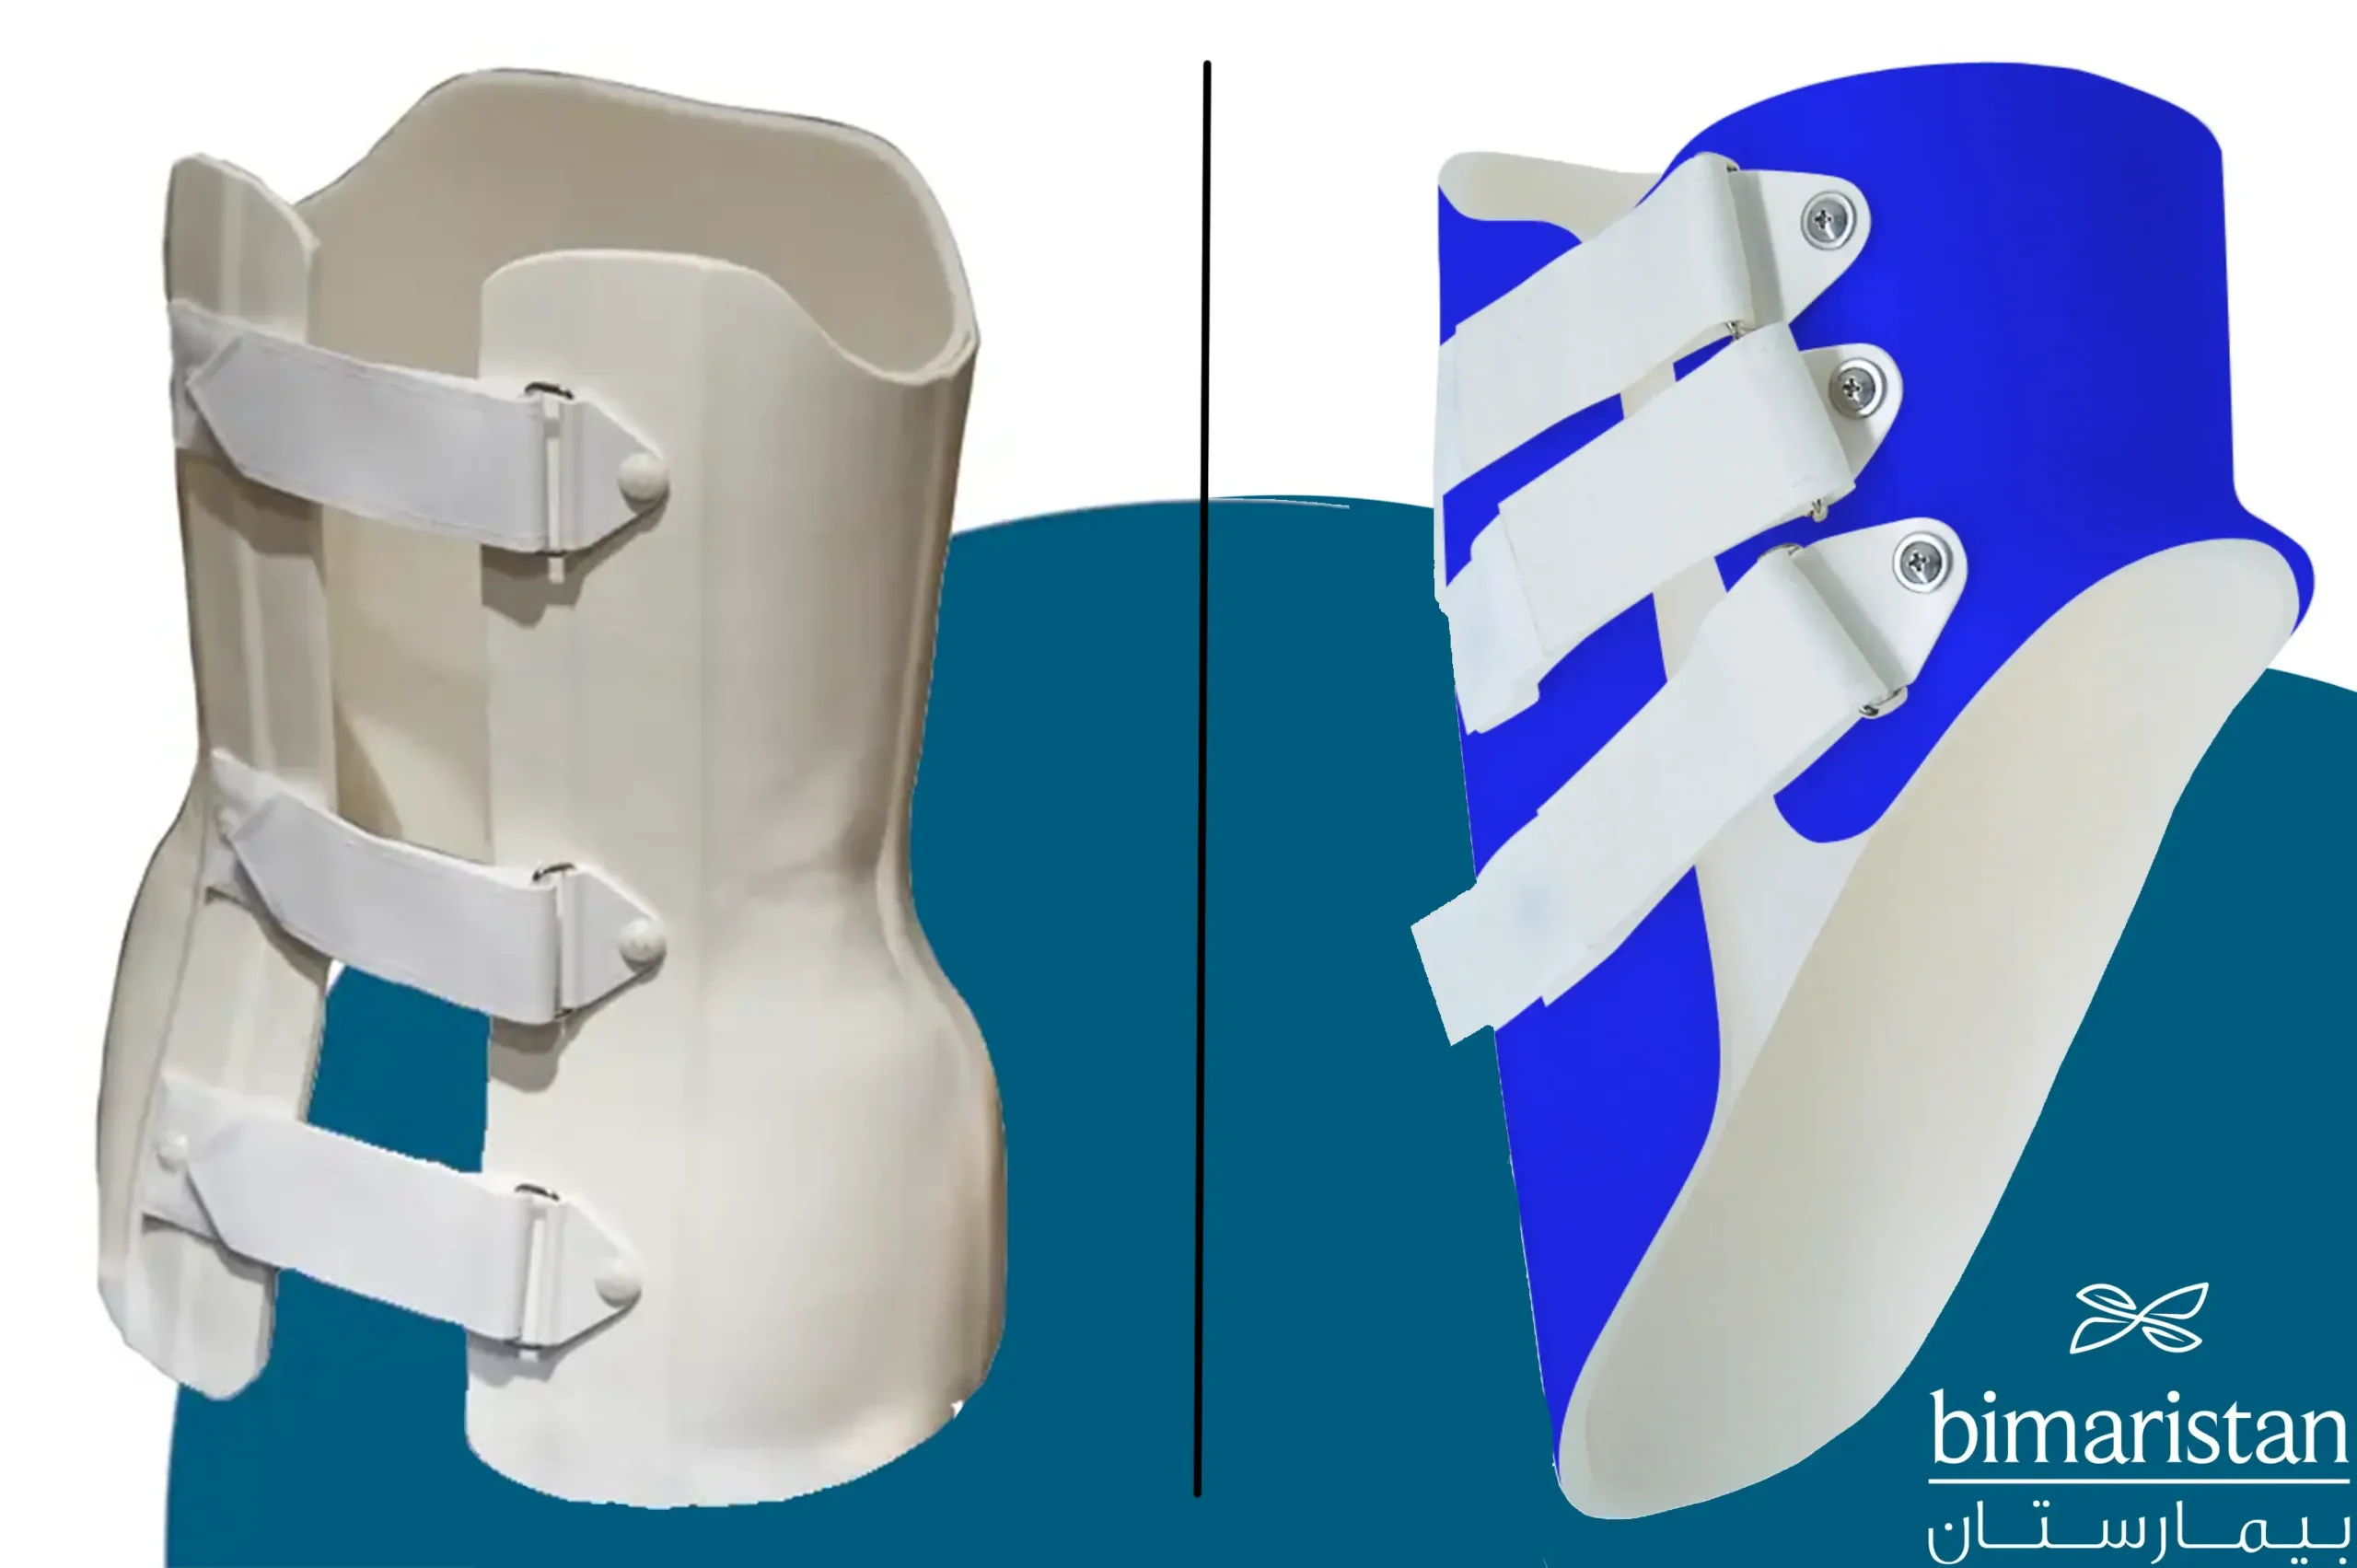 Skolyoz tedavisinde kullanılan diş tellerini, Providence korsesini (sağda) ve Boston korsesini (solda) gösteren görsel.